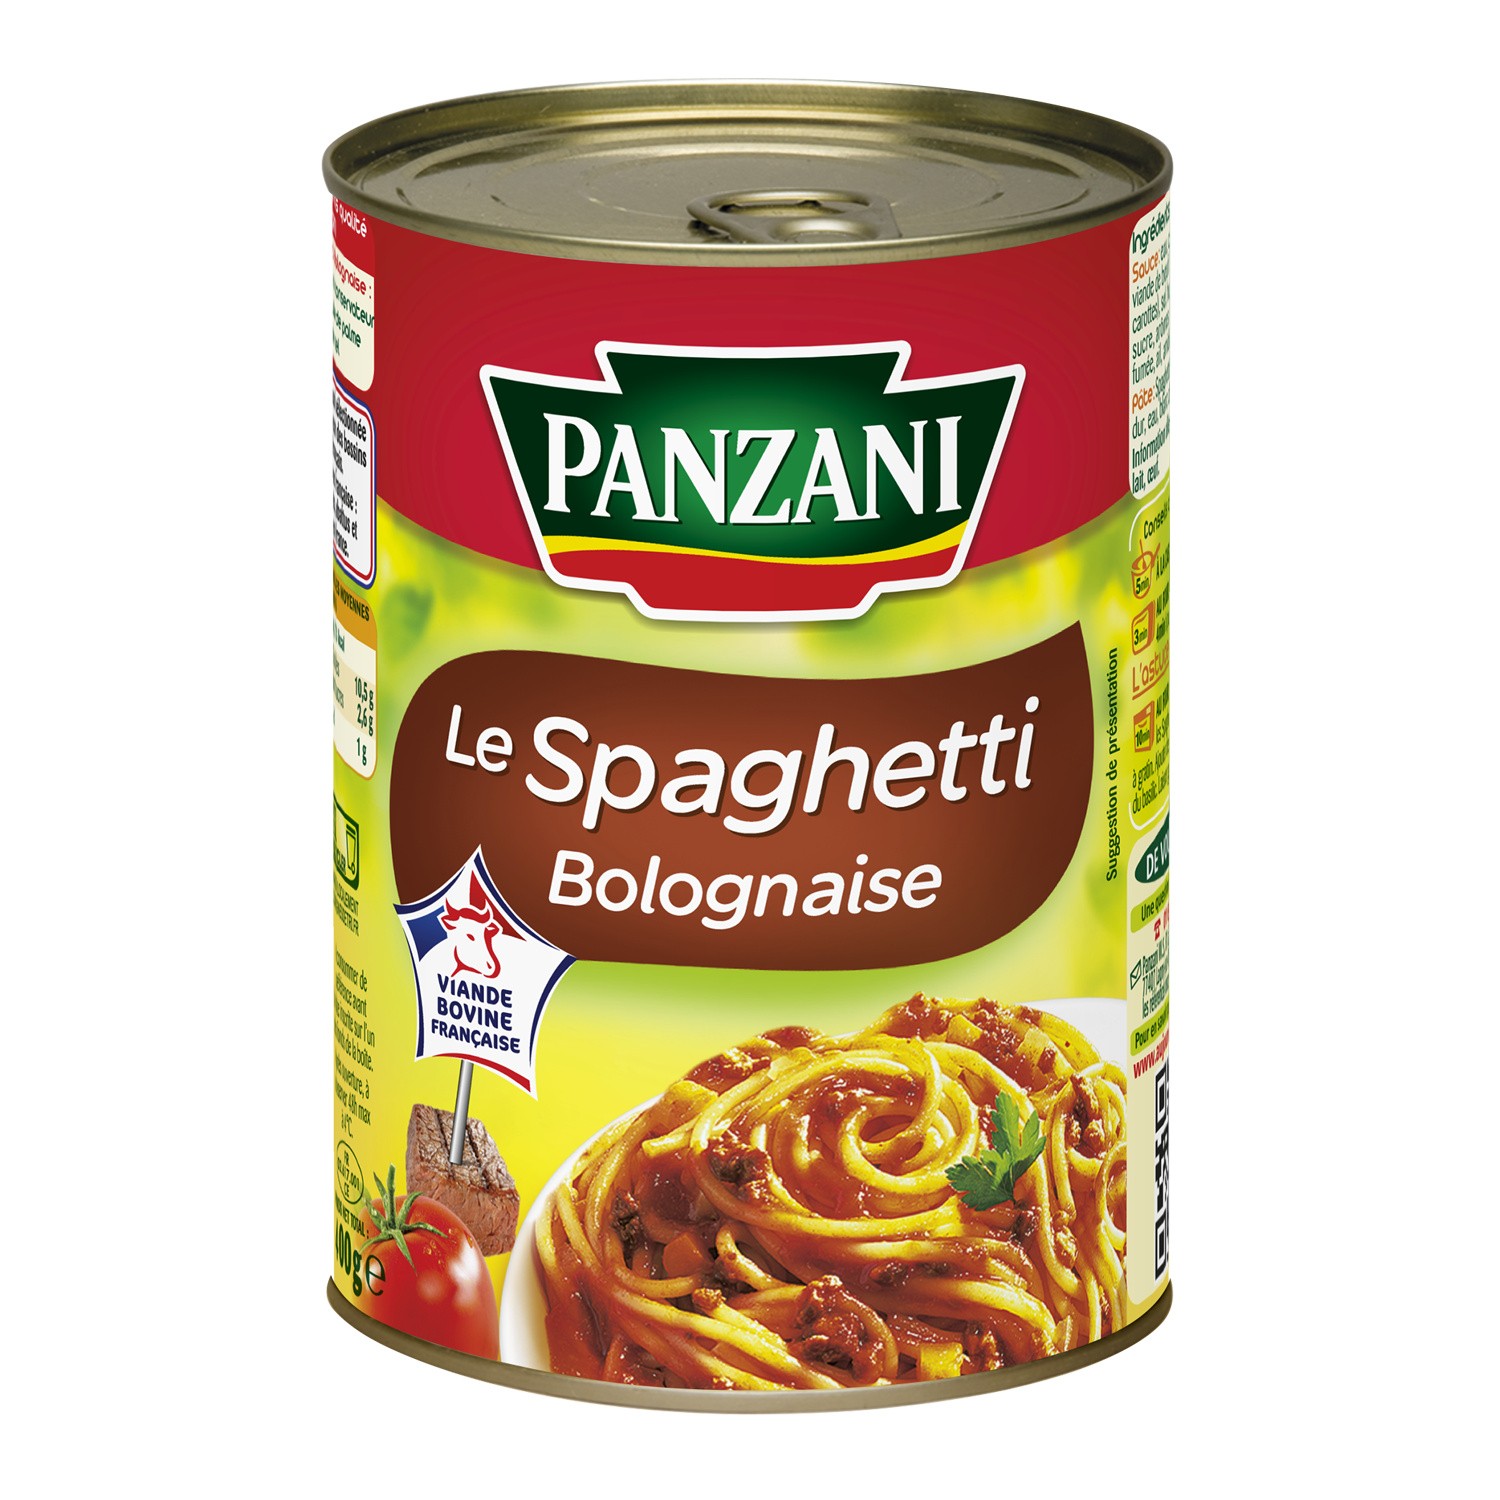 Le Spaghetti Bolognaise